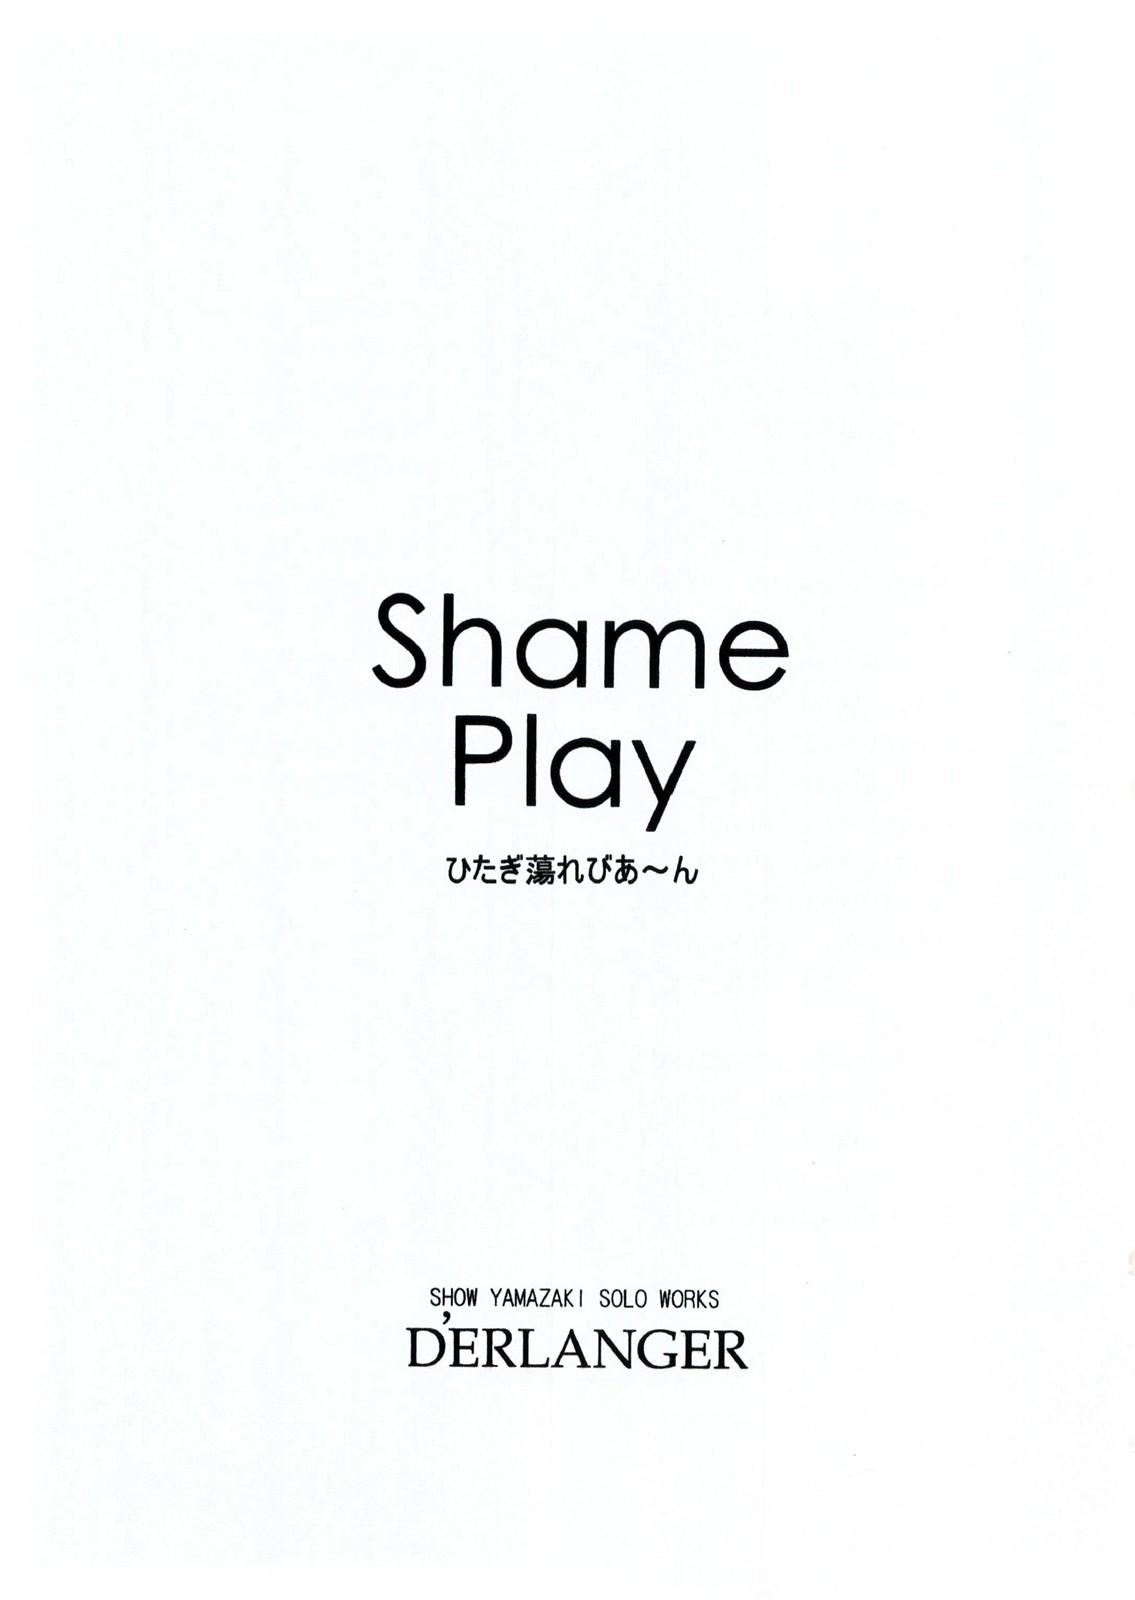 Shame Play 2